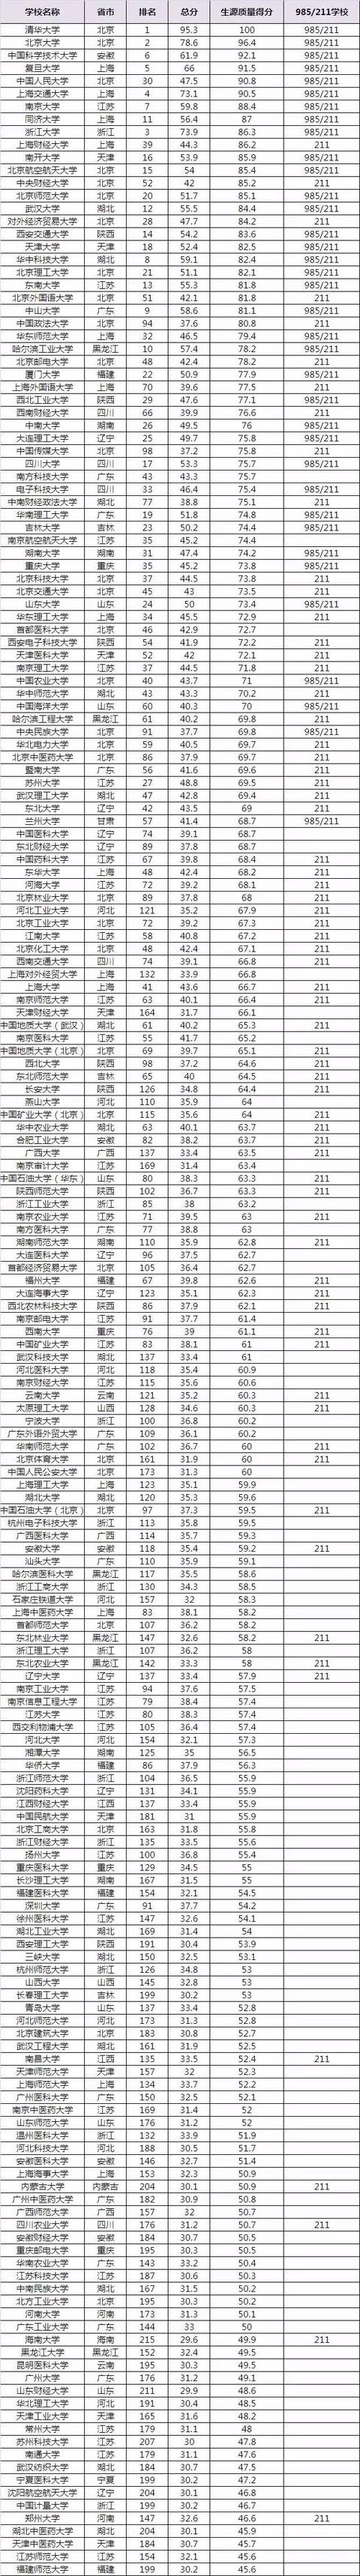 中国108所大学如何分类分层，你的目标院校在哪？为此奋斗吧